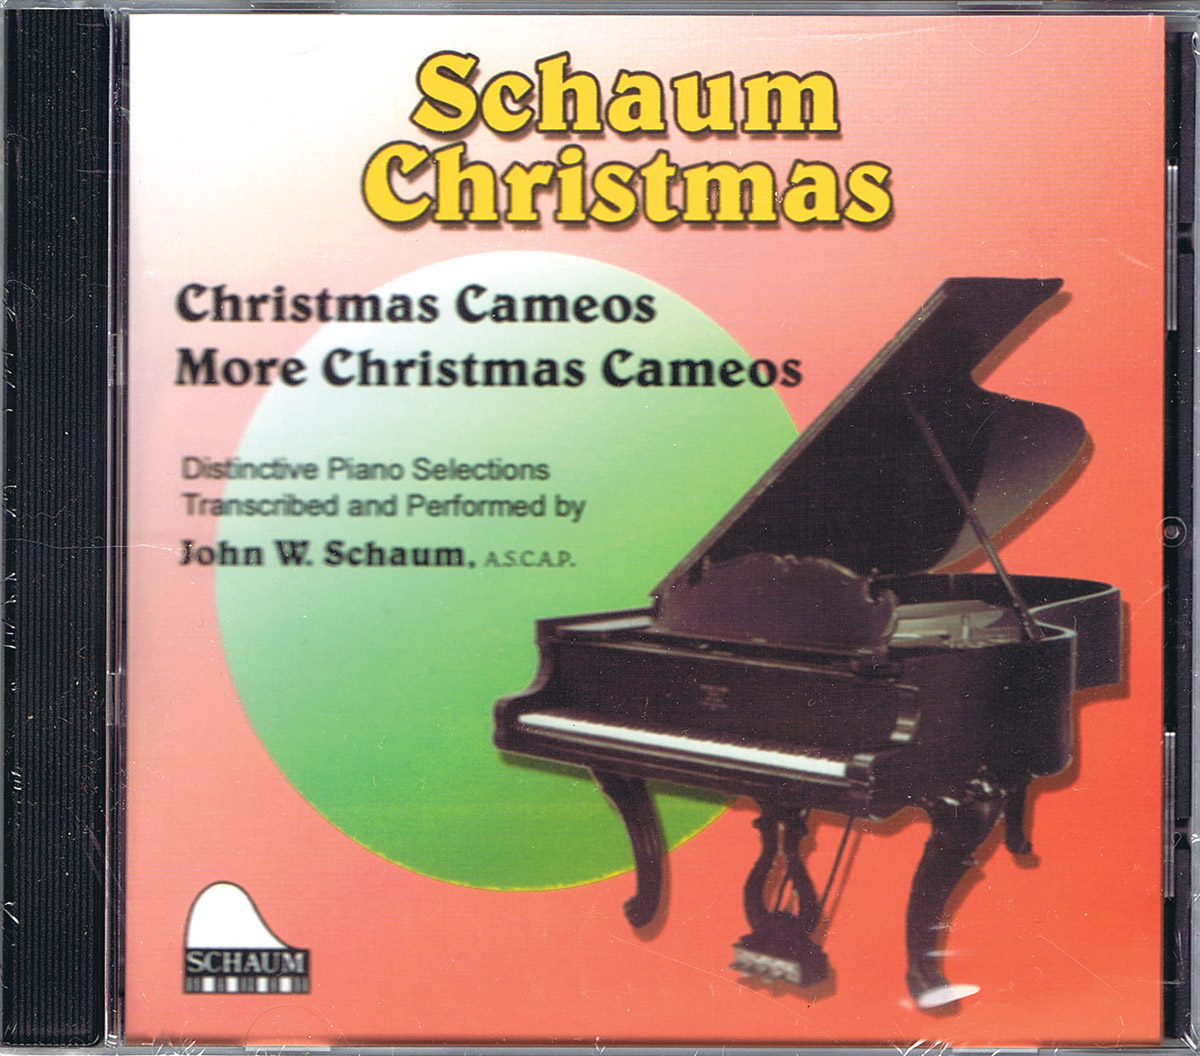 John W. Schaum: Schaum Christmas Cameos More Christmas Cameos